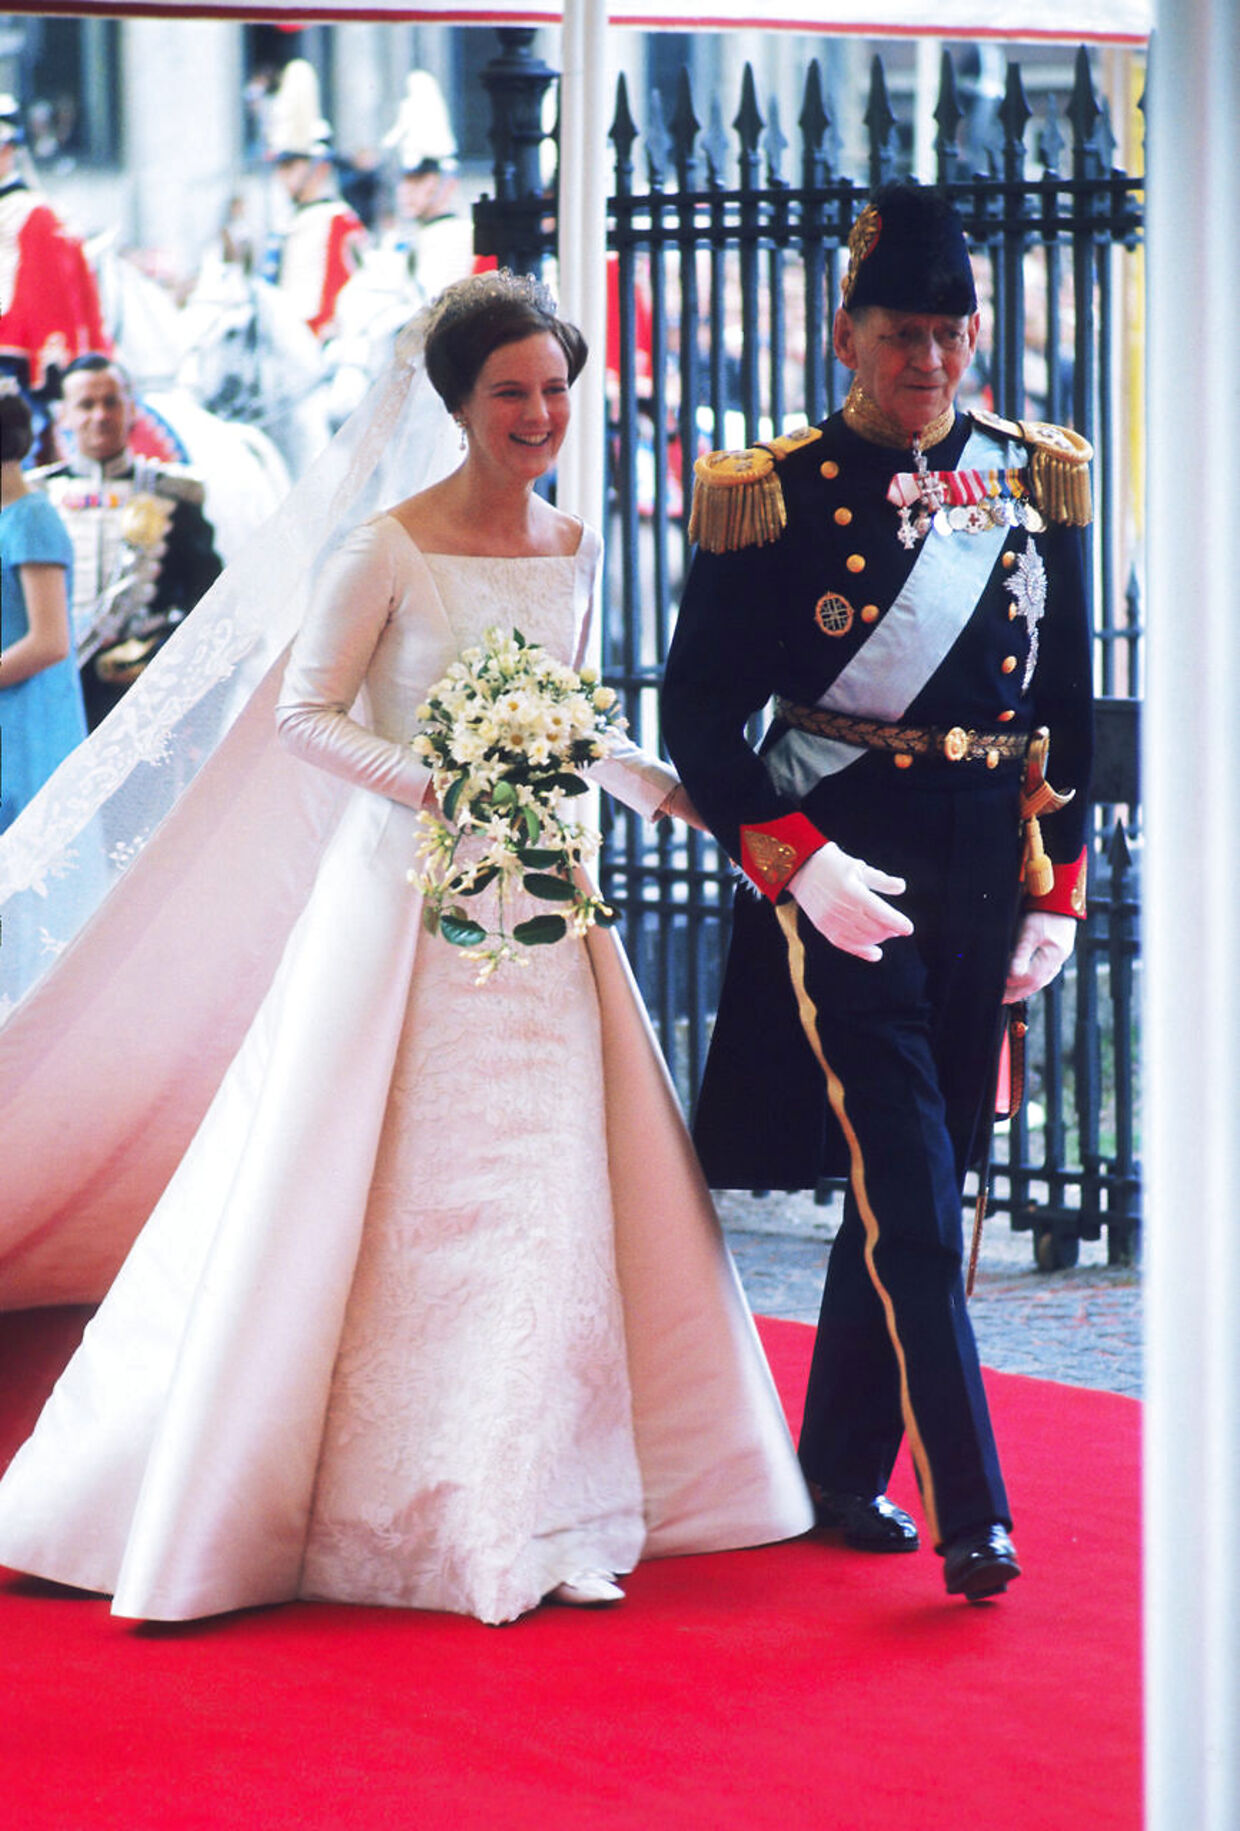 om Dronningens vigtigste kjoler gennem tiden: Én kjole har særlig betydning | BT Royale - www.bt.dk